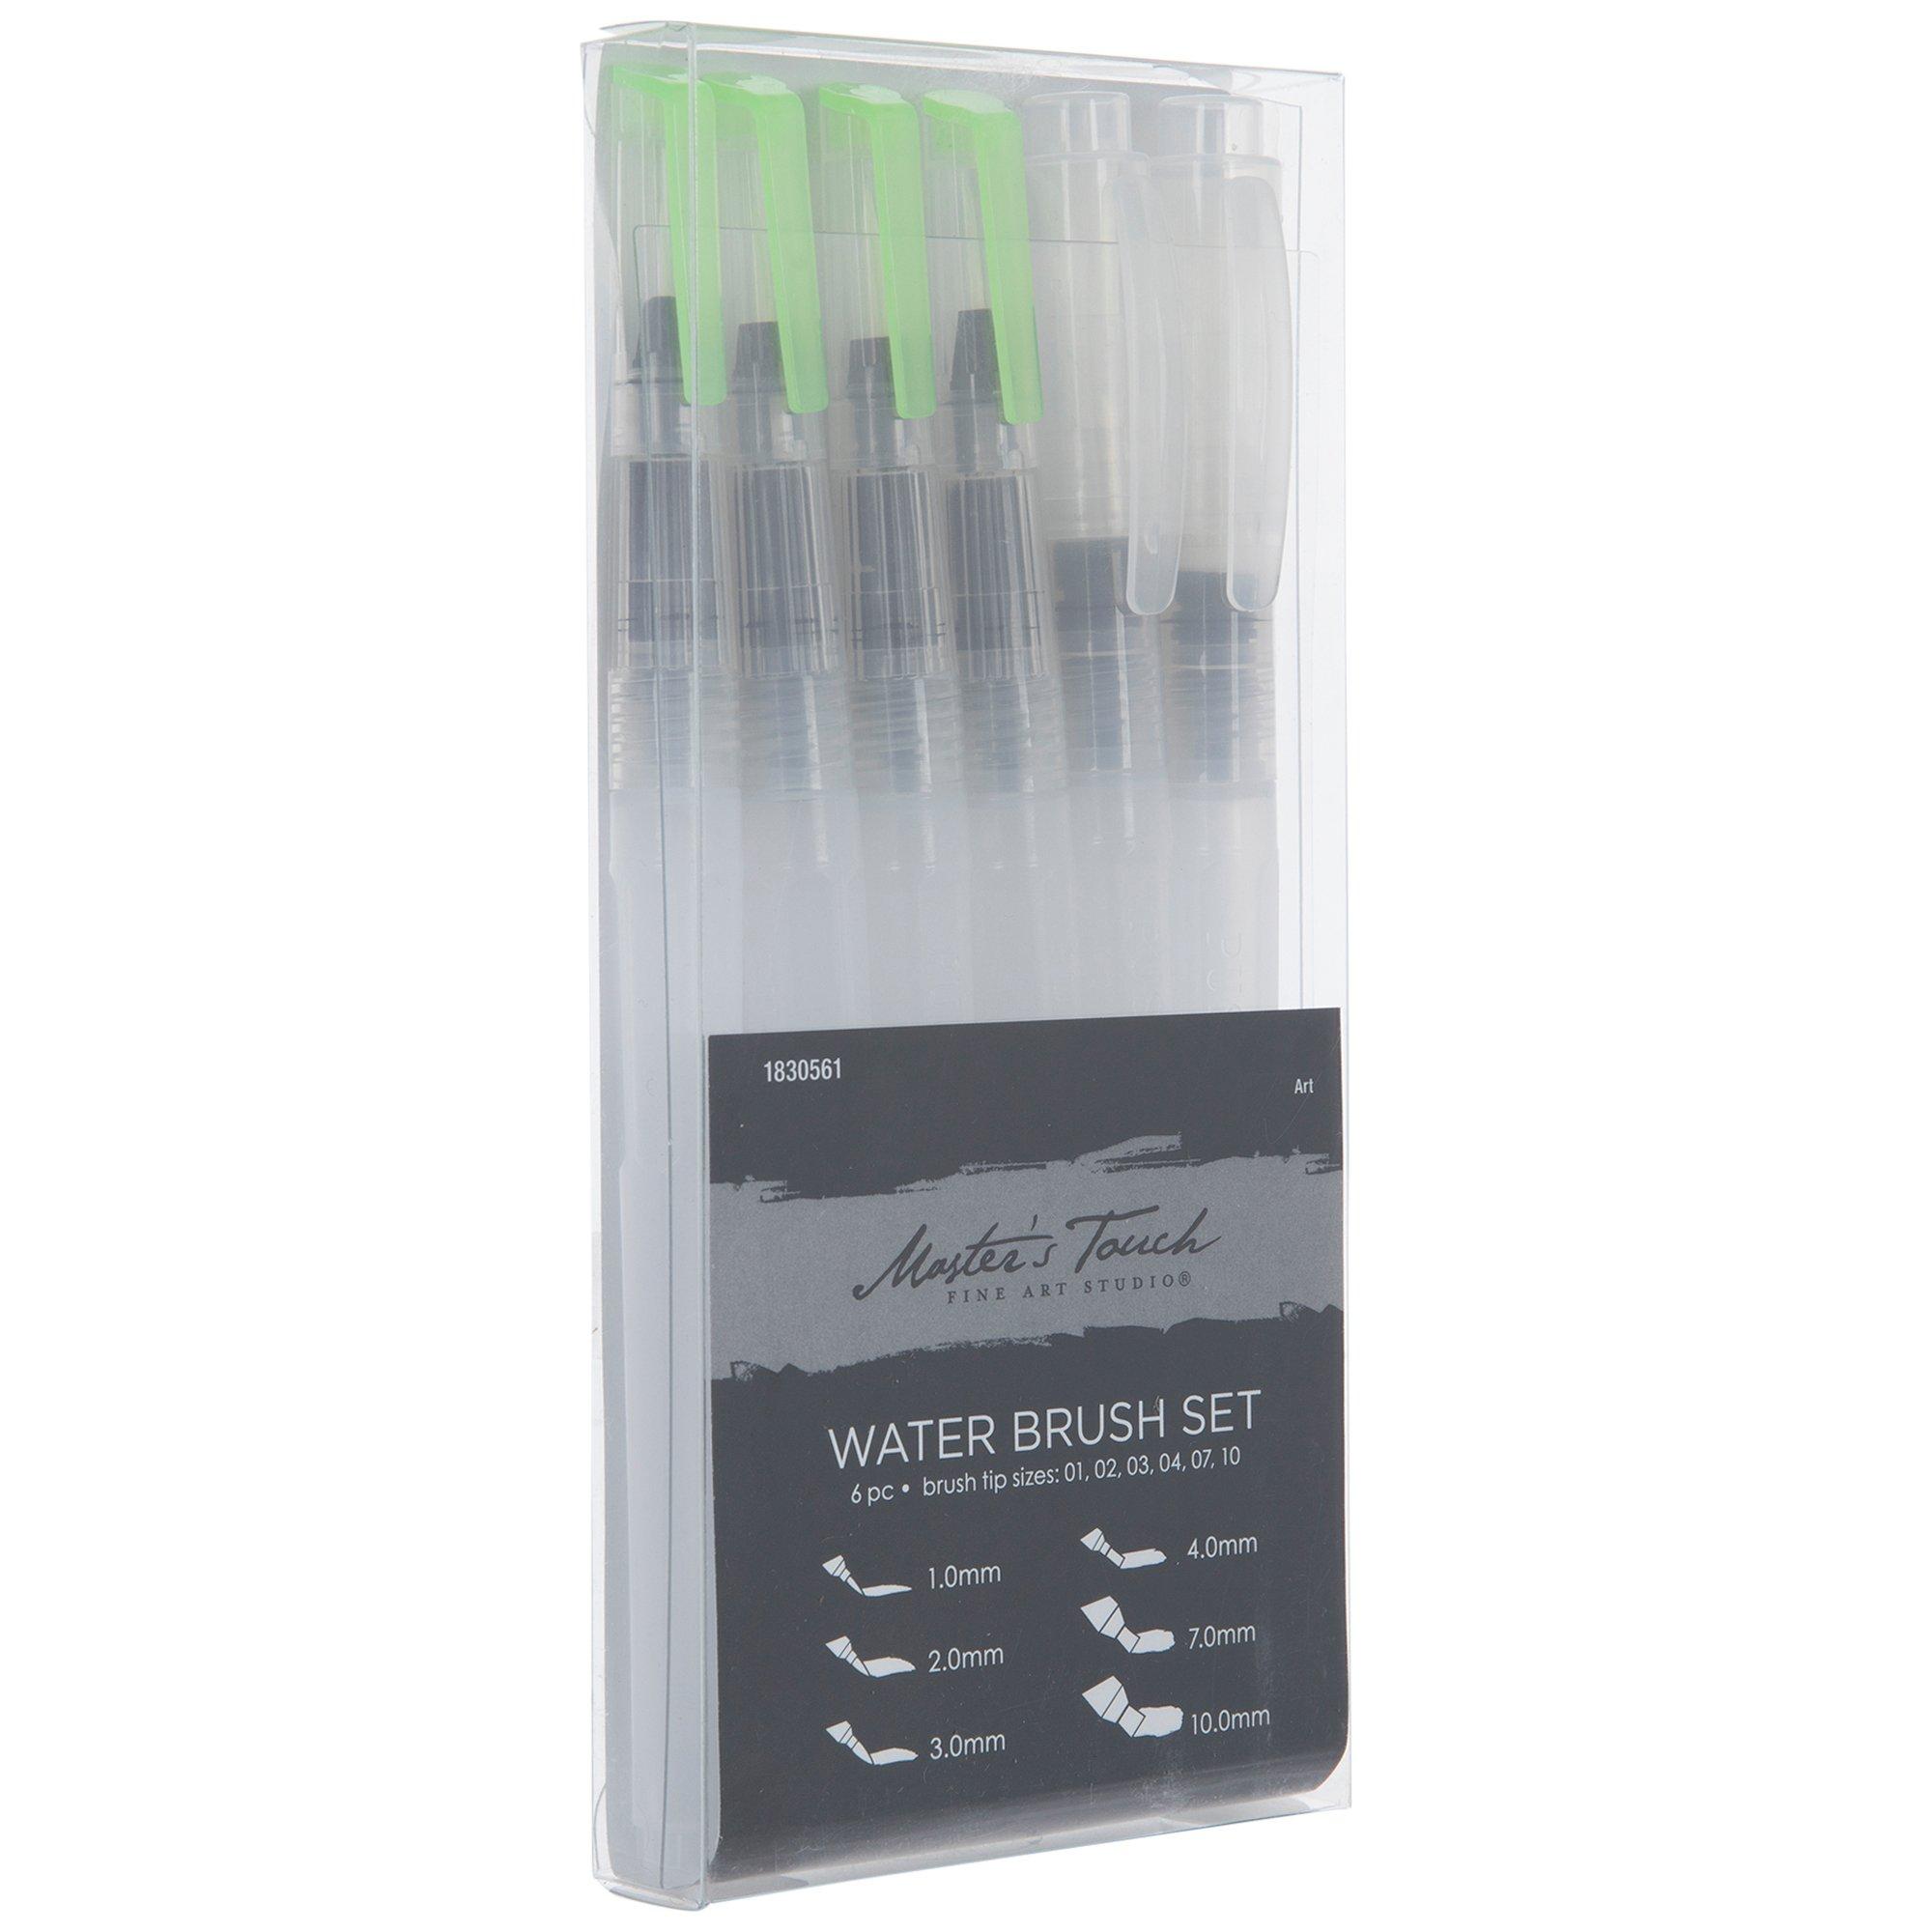 watercolor Brush Pens, set of 6 Refillable Art Water Brush for